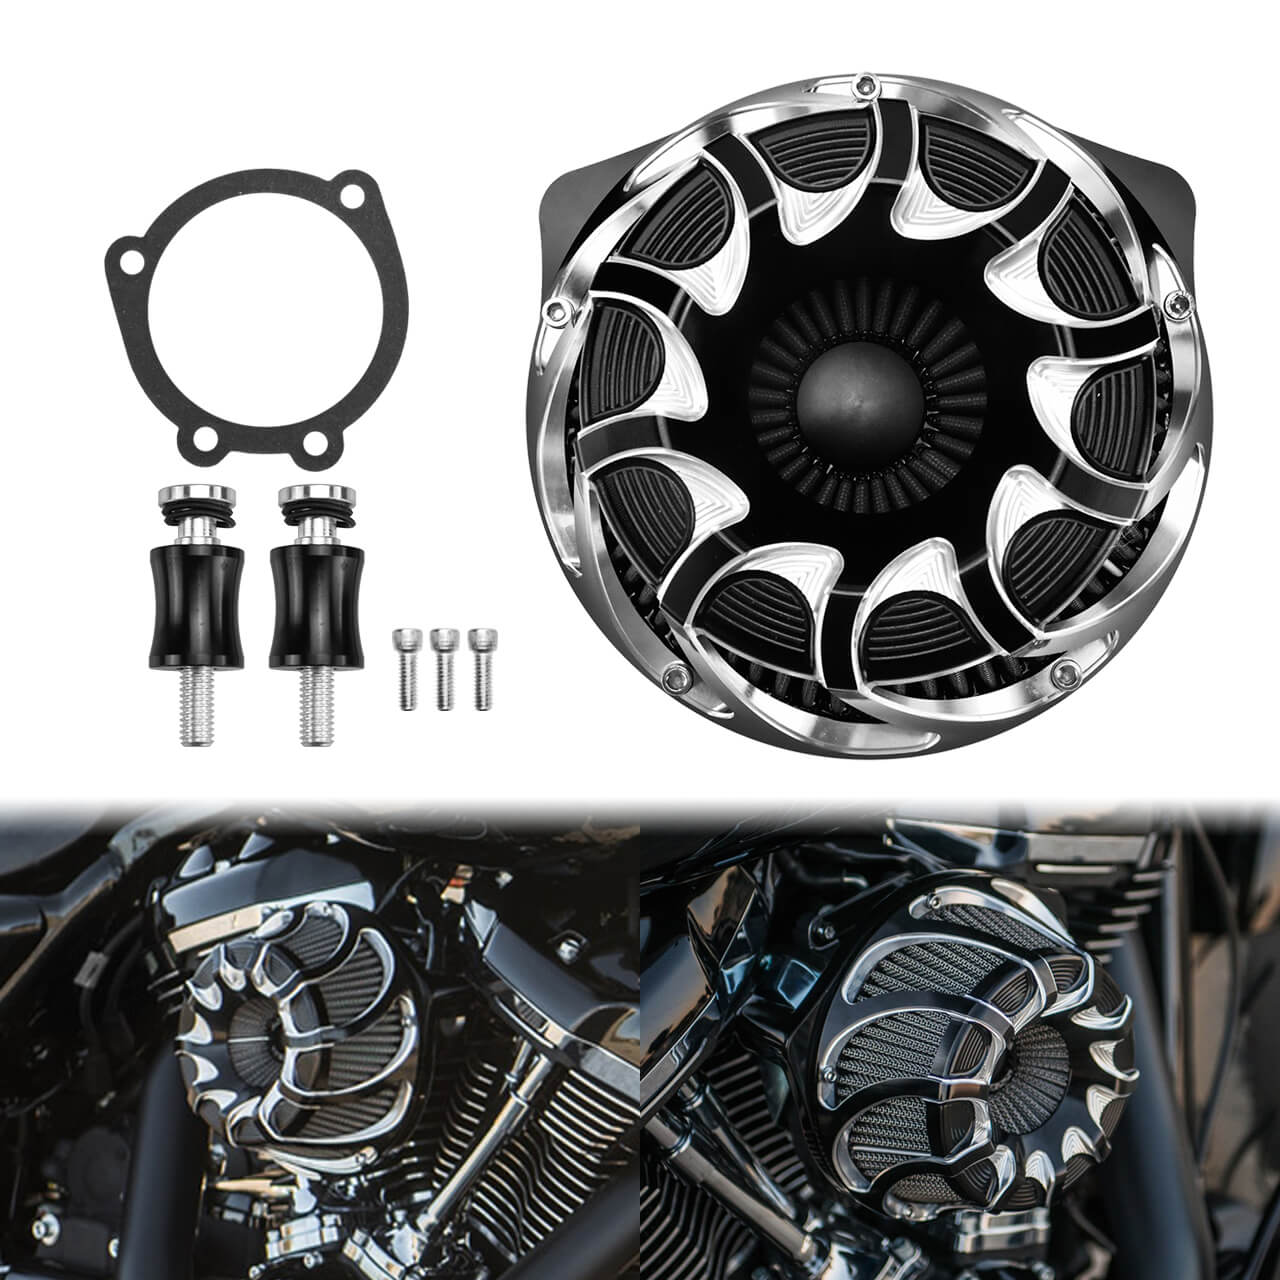 AF006902-CNC-Air-Filter-Grey-Intake-Kit-Fit-Harley-Dyna